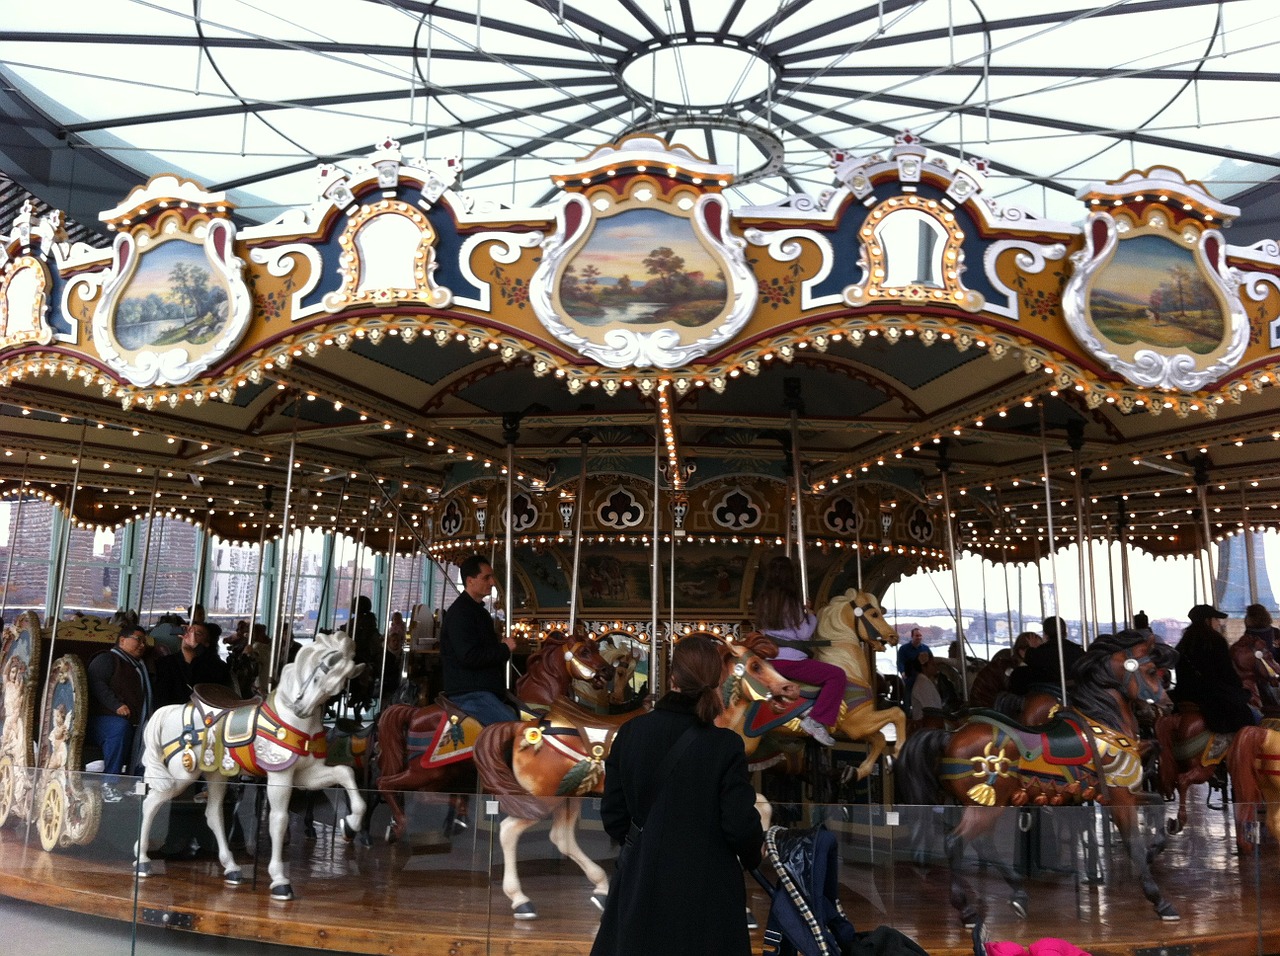 carousel merry-go-round ride free photo